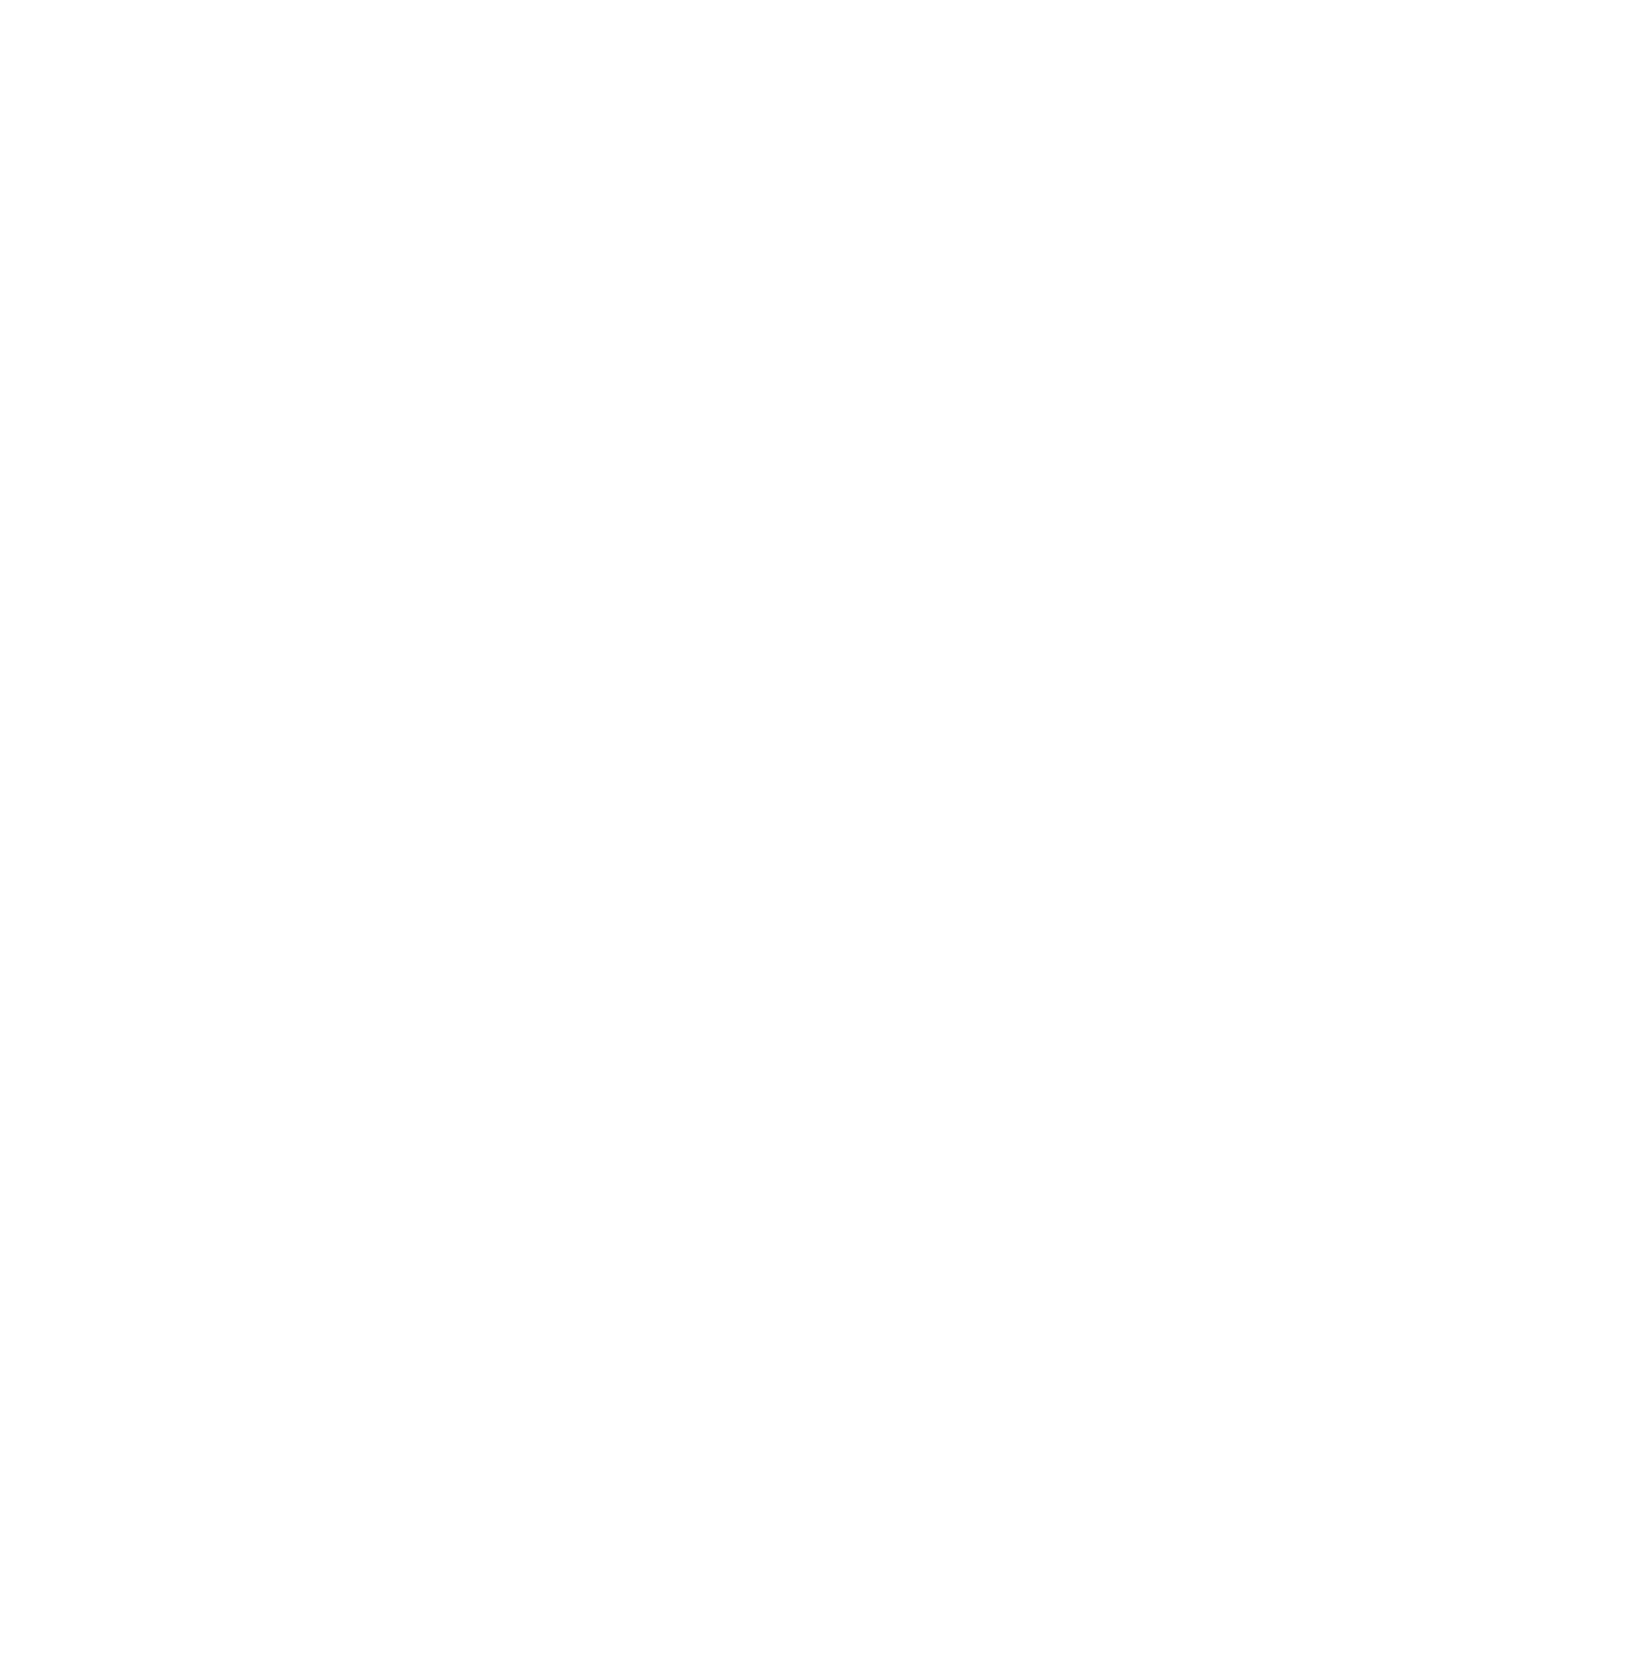 Lancaster City Indie Retail Week